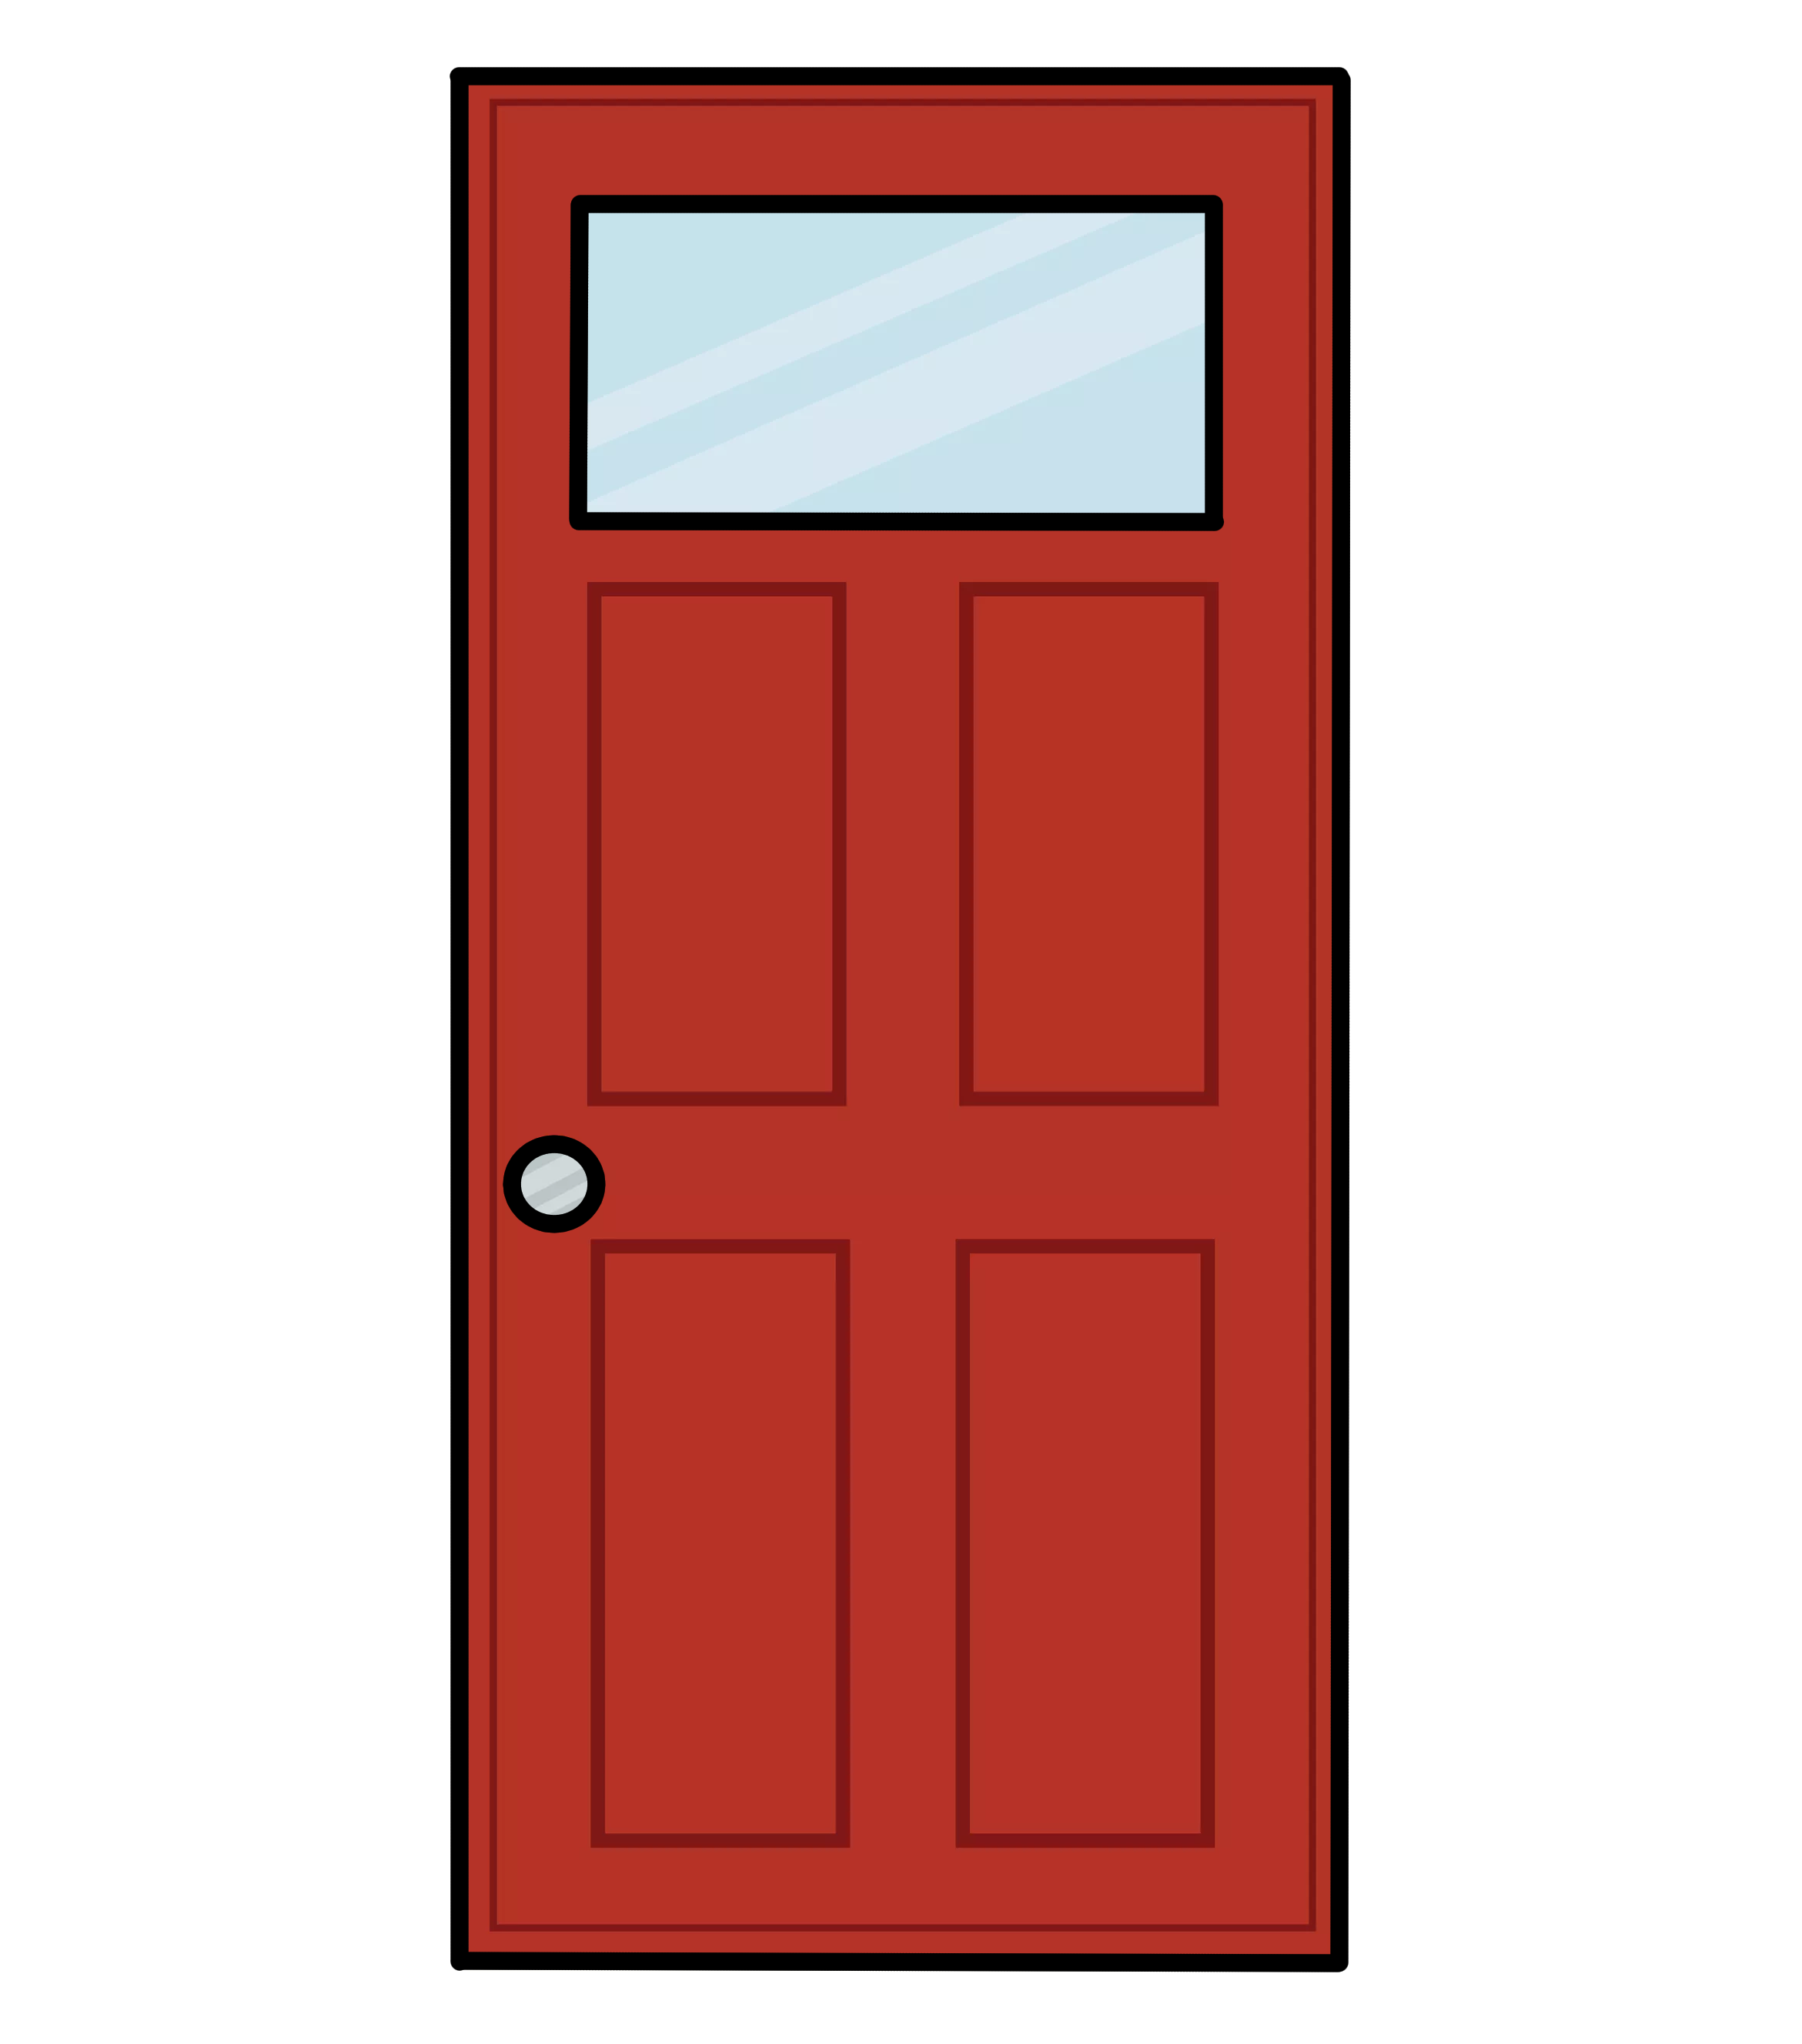 A red door.